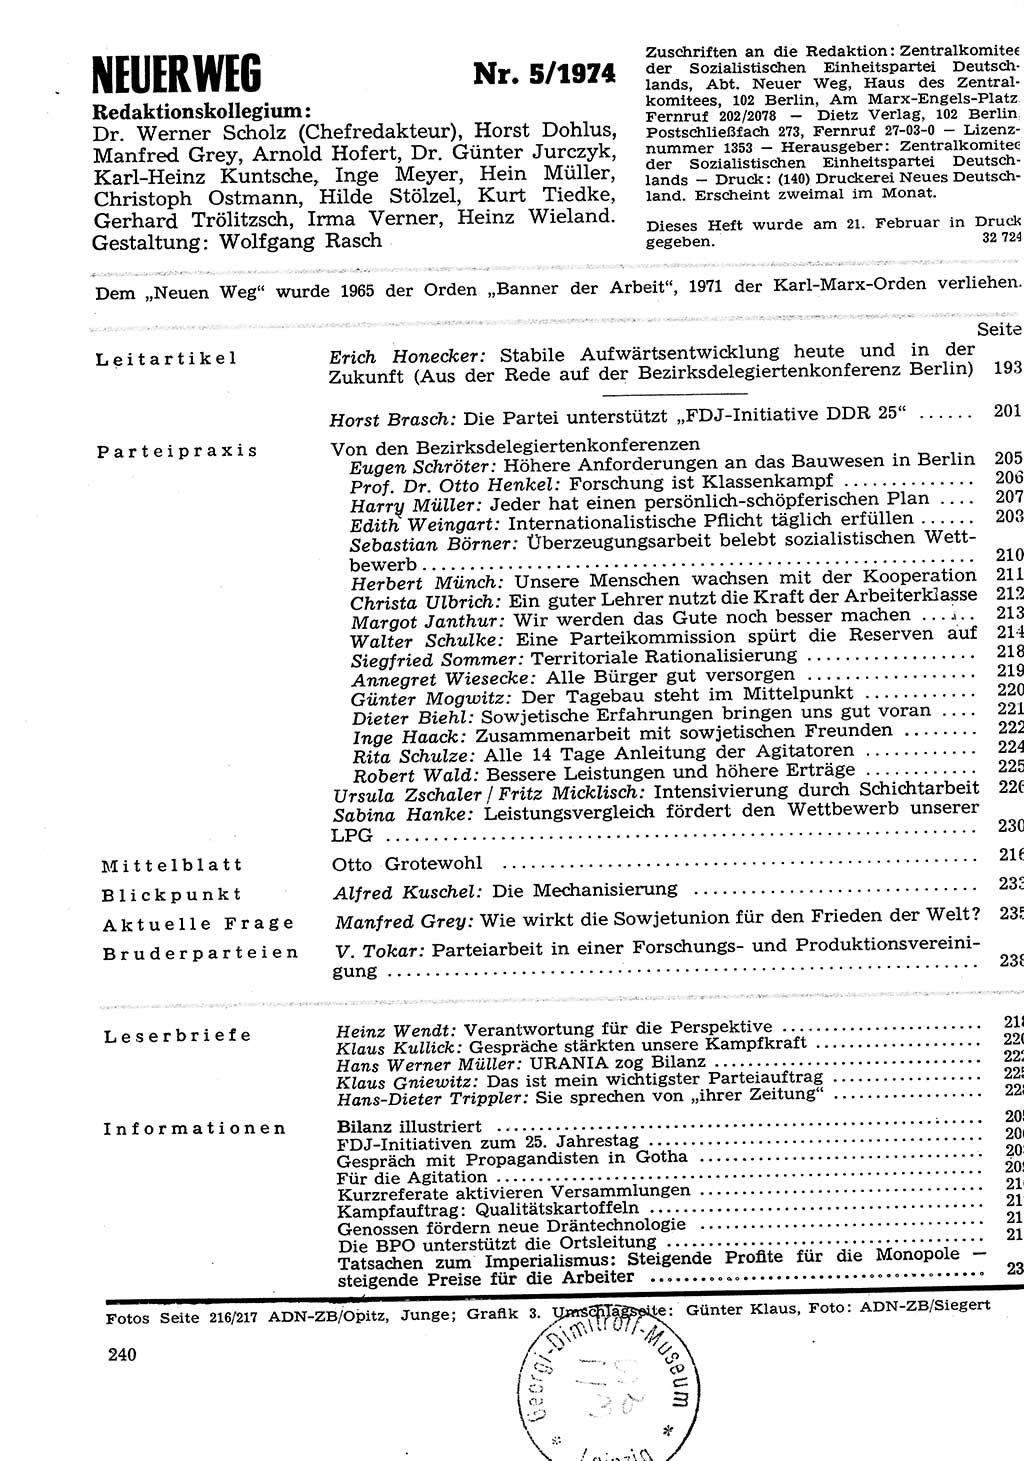 Neuer Weg (NW), Organ des Zentralkomitees (ZK) der SED (Sozialistische Einheitspartei Deutschlands) für Fragen des Parteilebens, 29. Jahrgang [Deutsche Demokratische Republik (DDR)] 1974, Seite 240 (NW ZK SED DDR 1974, S. 240)